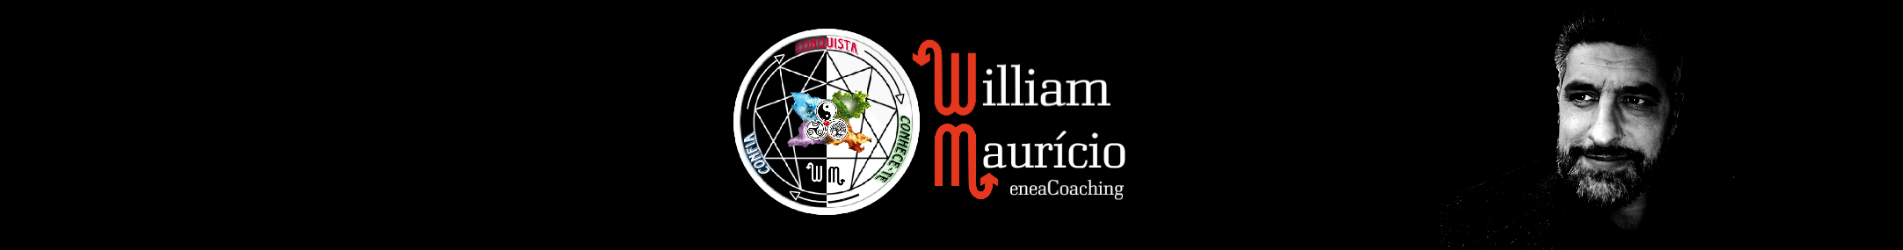 William Maurício ~ Coach Transformacional